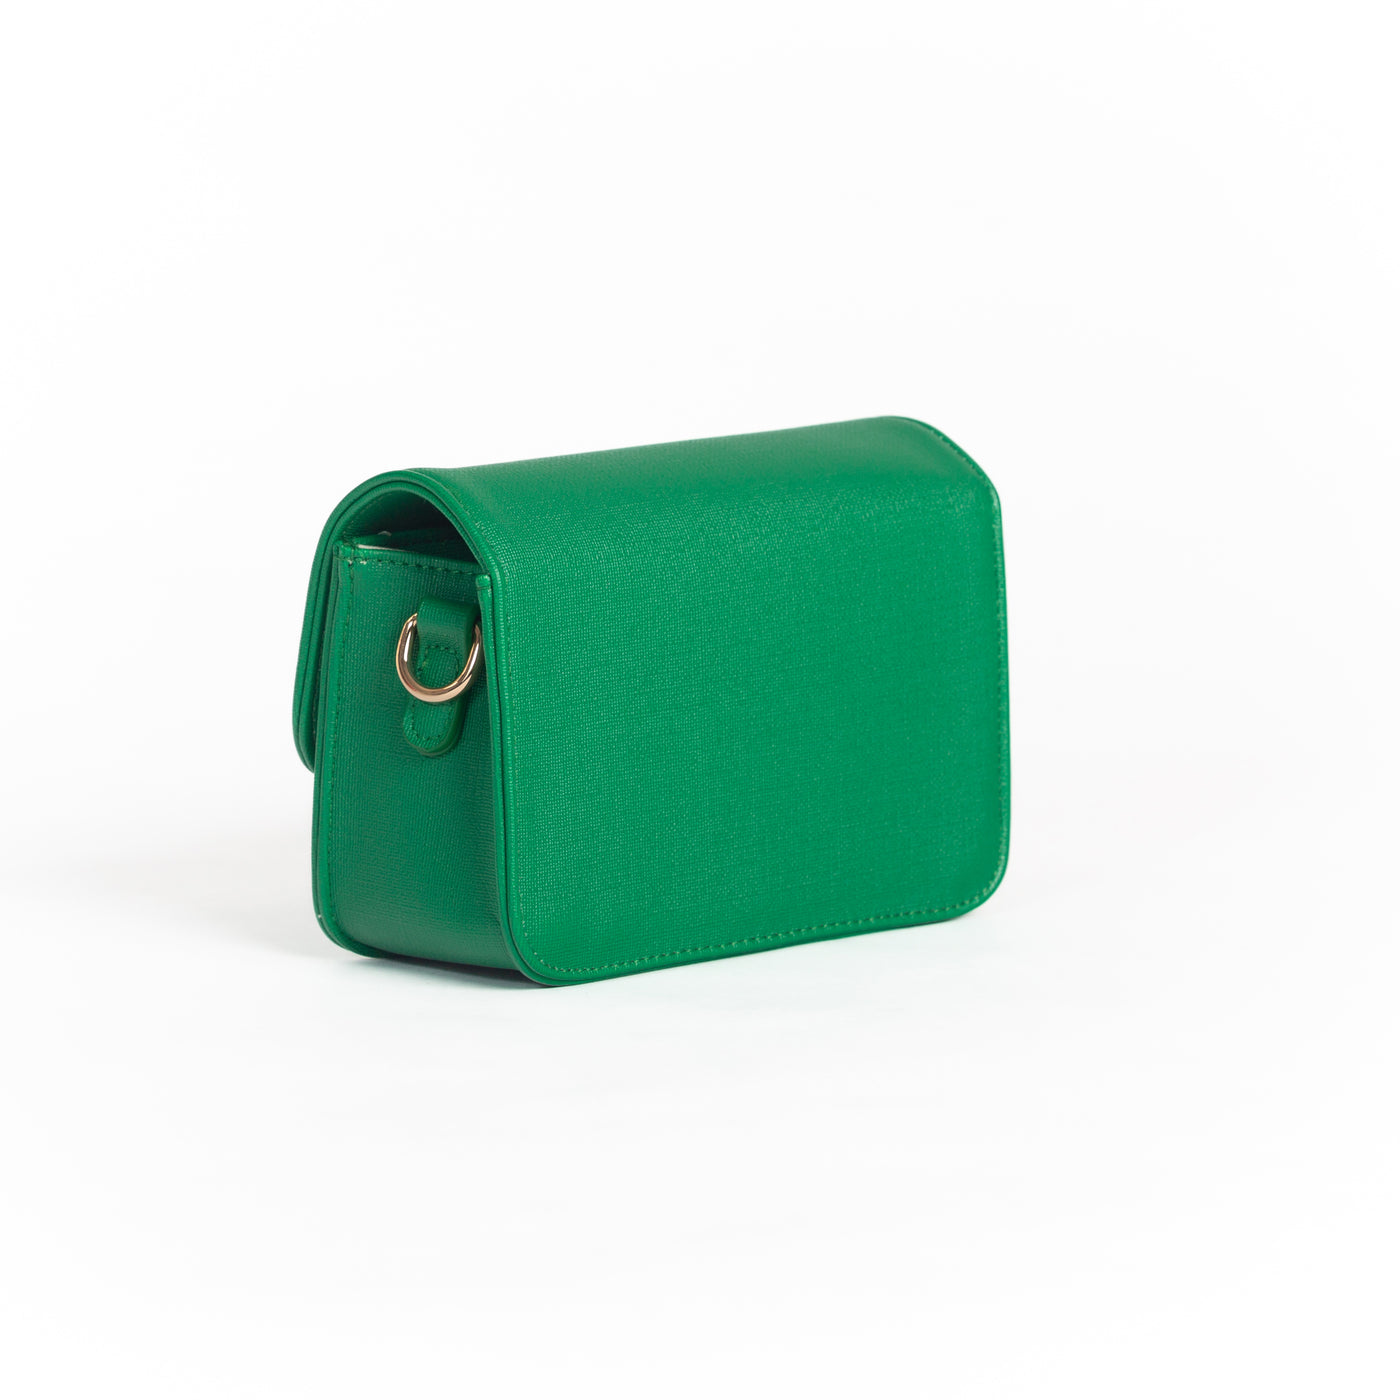 Back of small green handbag